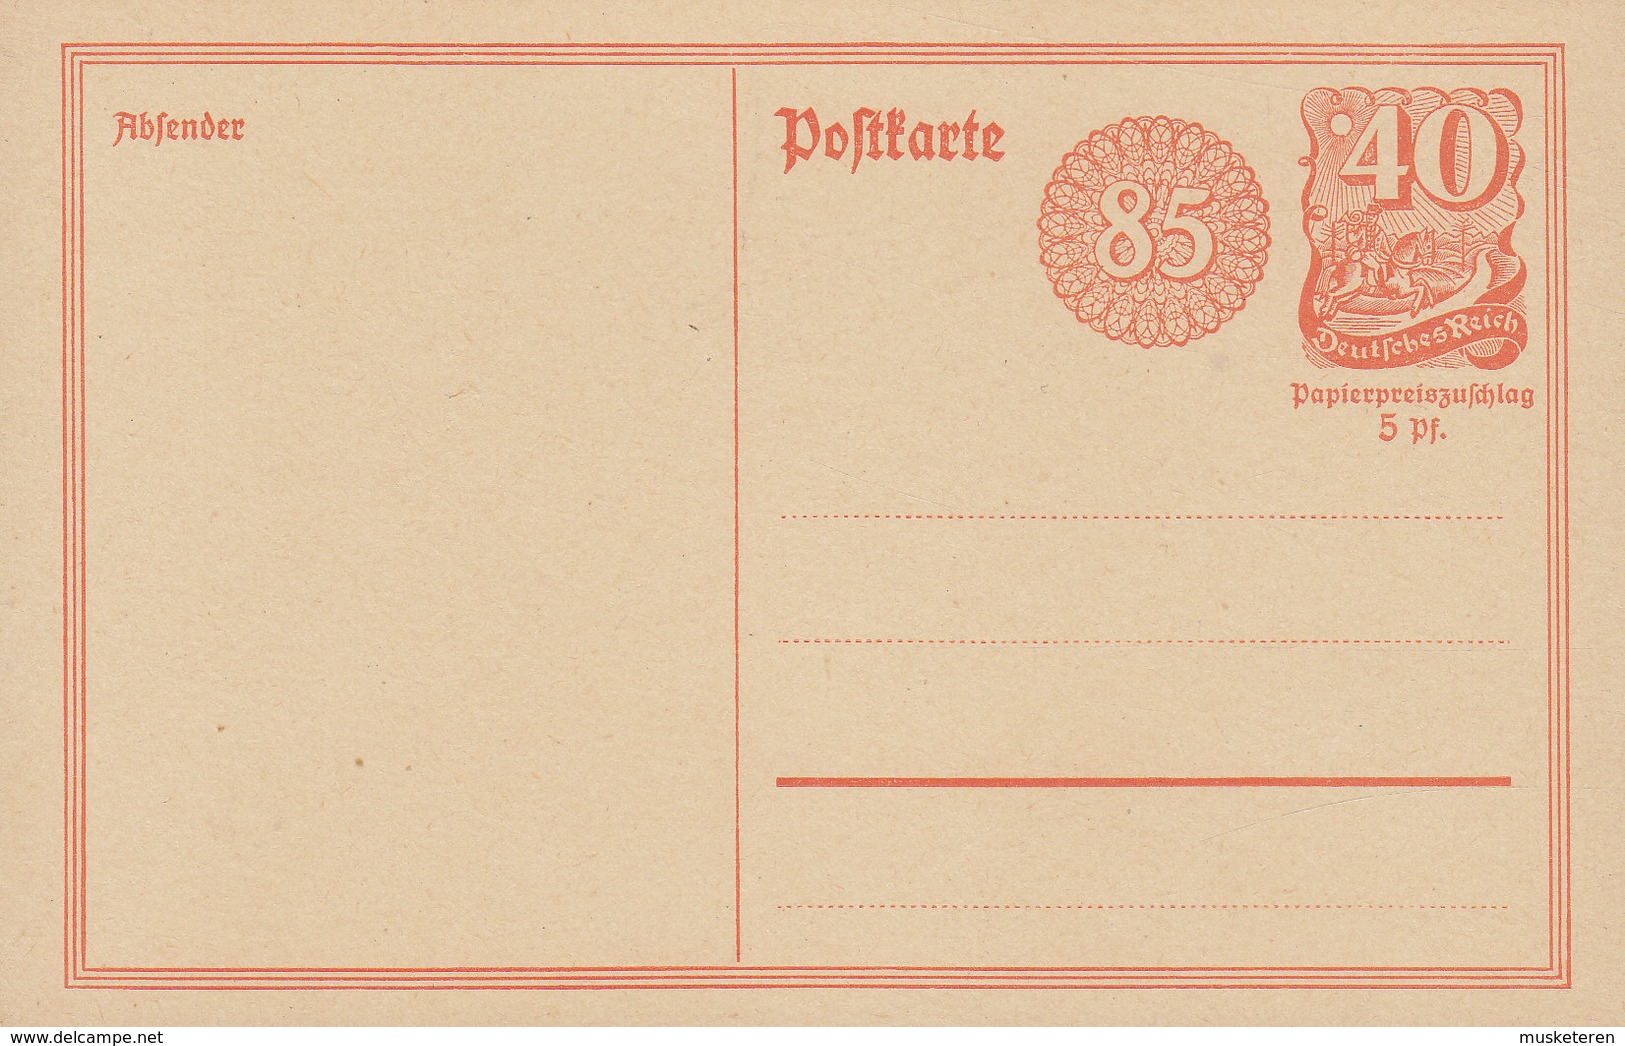 Deutsches Reich Postal Stationery Ganzsache Entier 85 Pf. Neben 40 Pf. Postreiter M. Rosettendruck (Unused) - Postcards